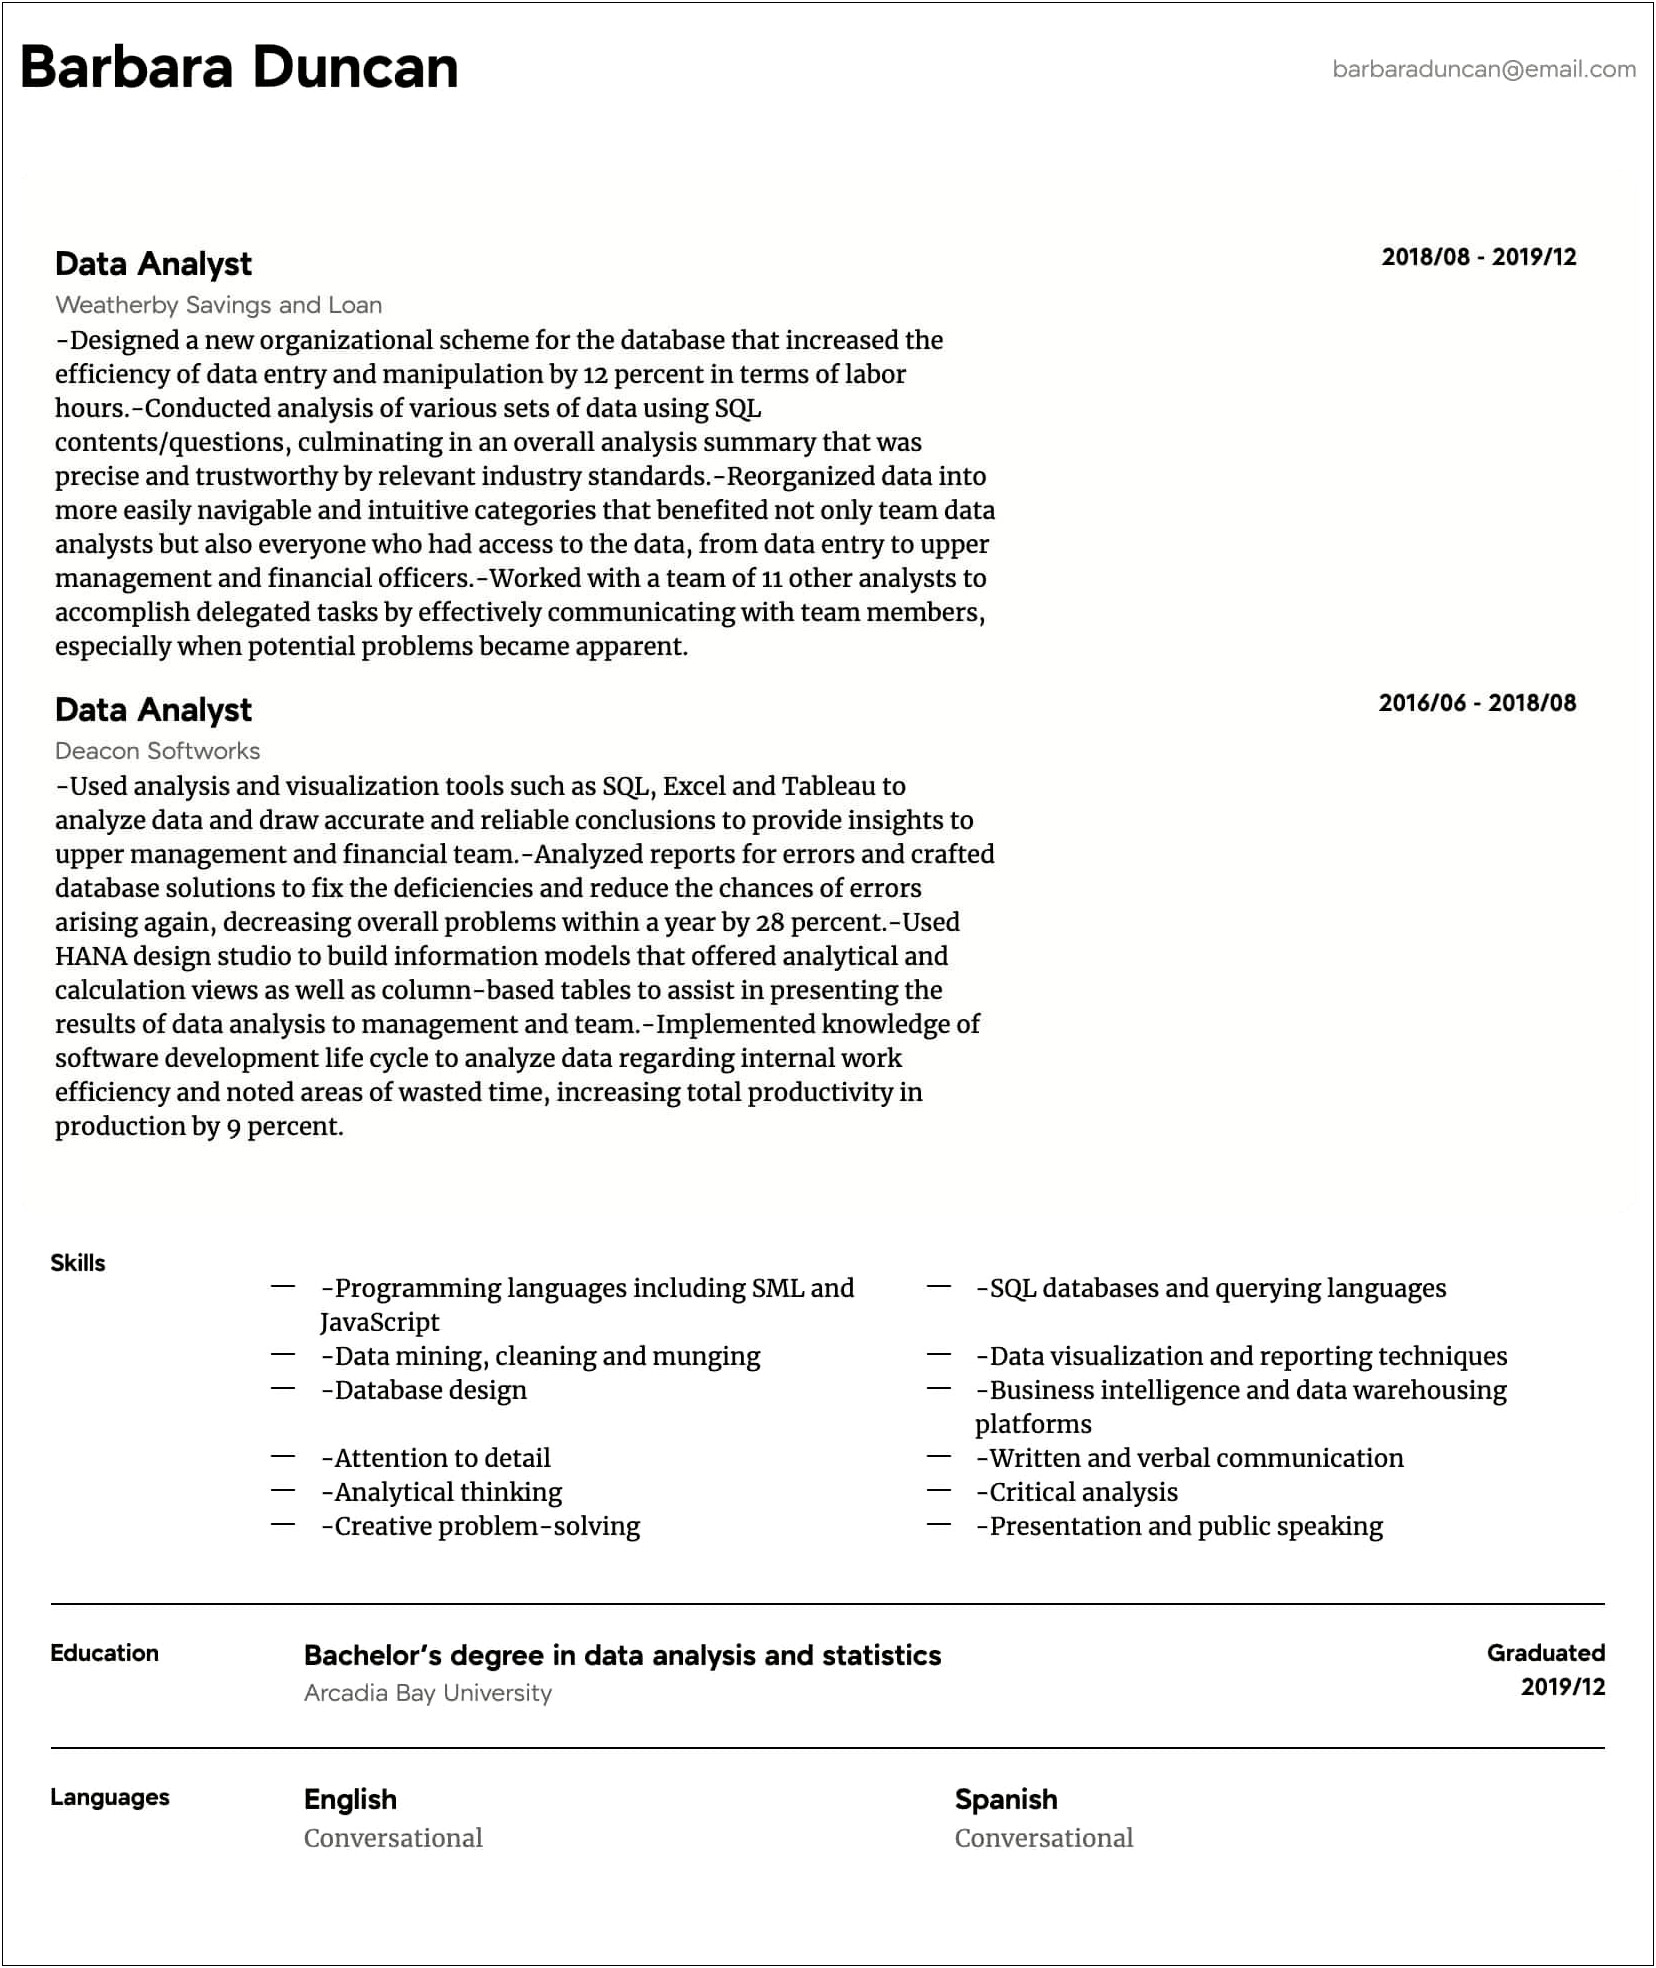 Sample Resume Format For Data Analyst